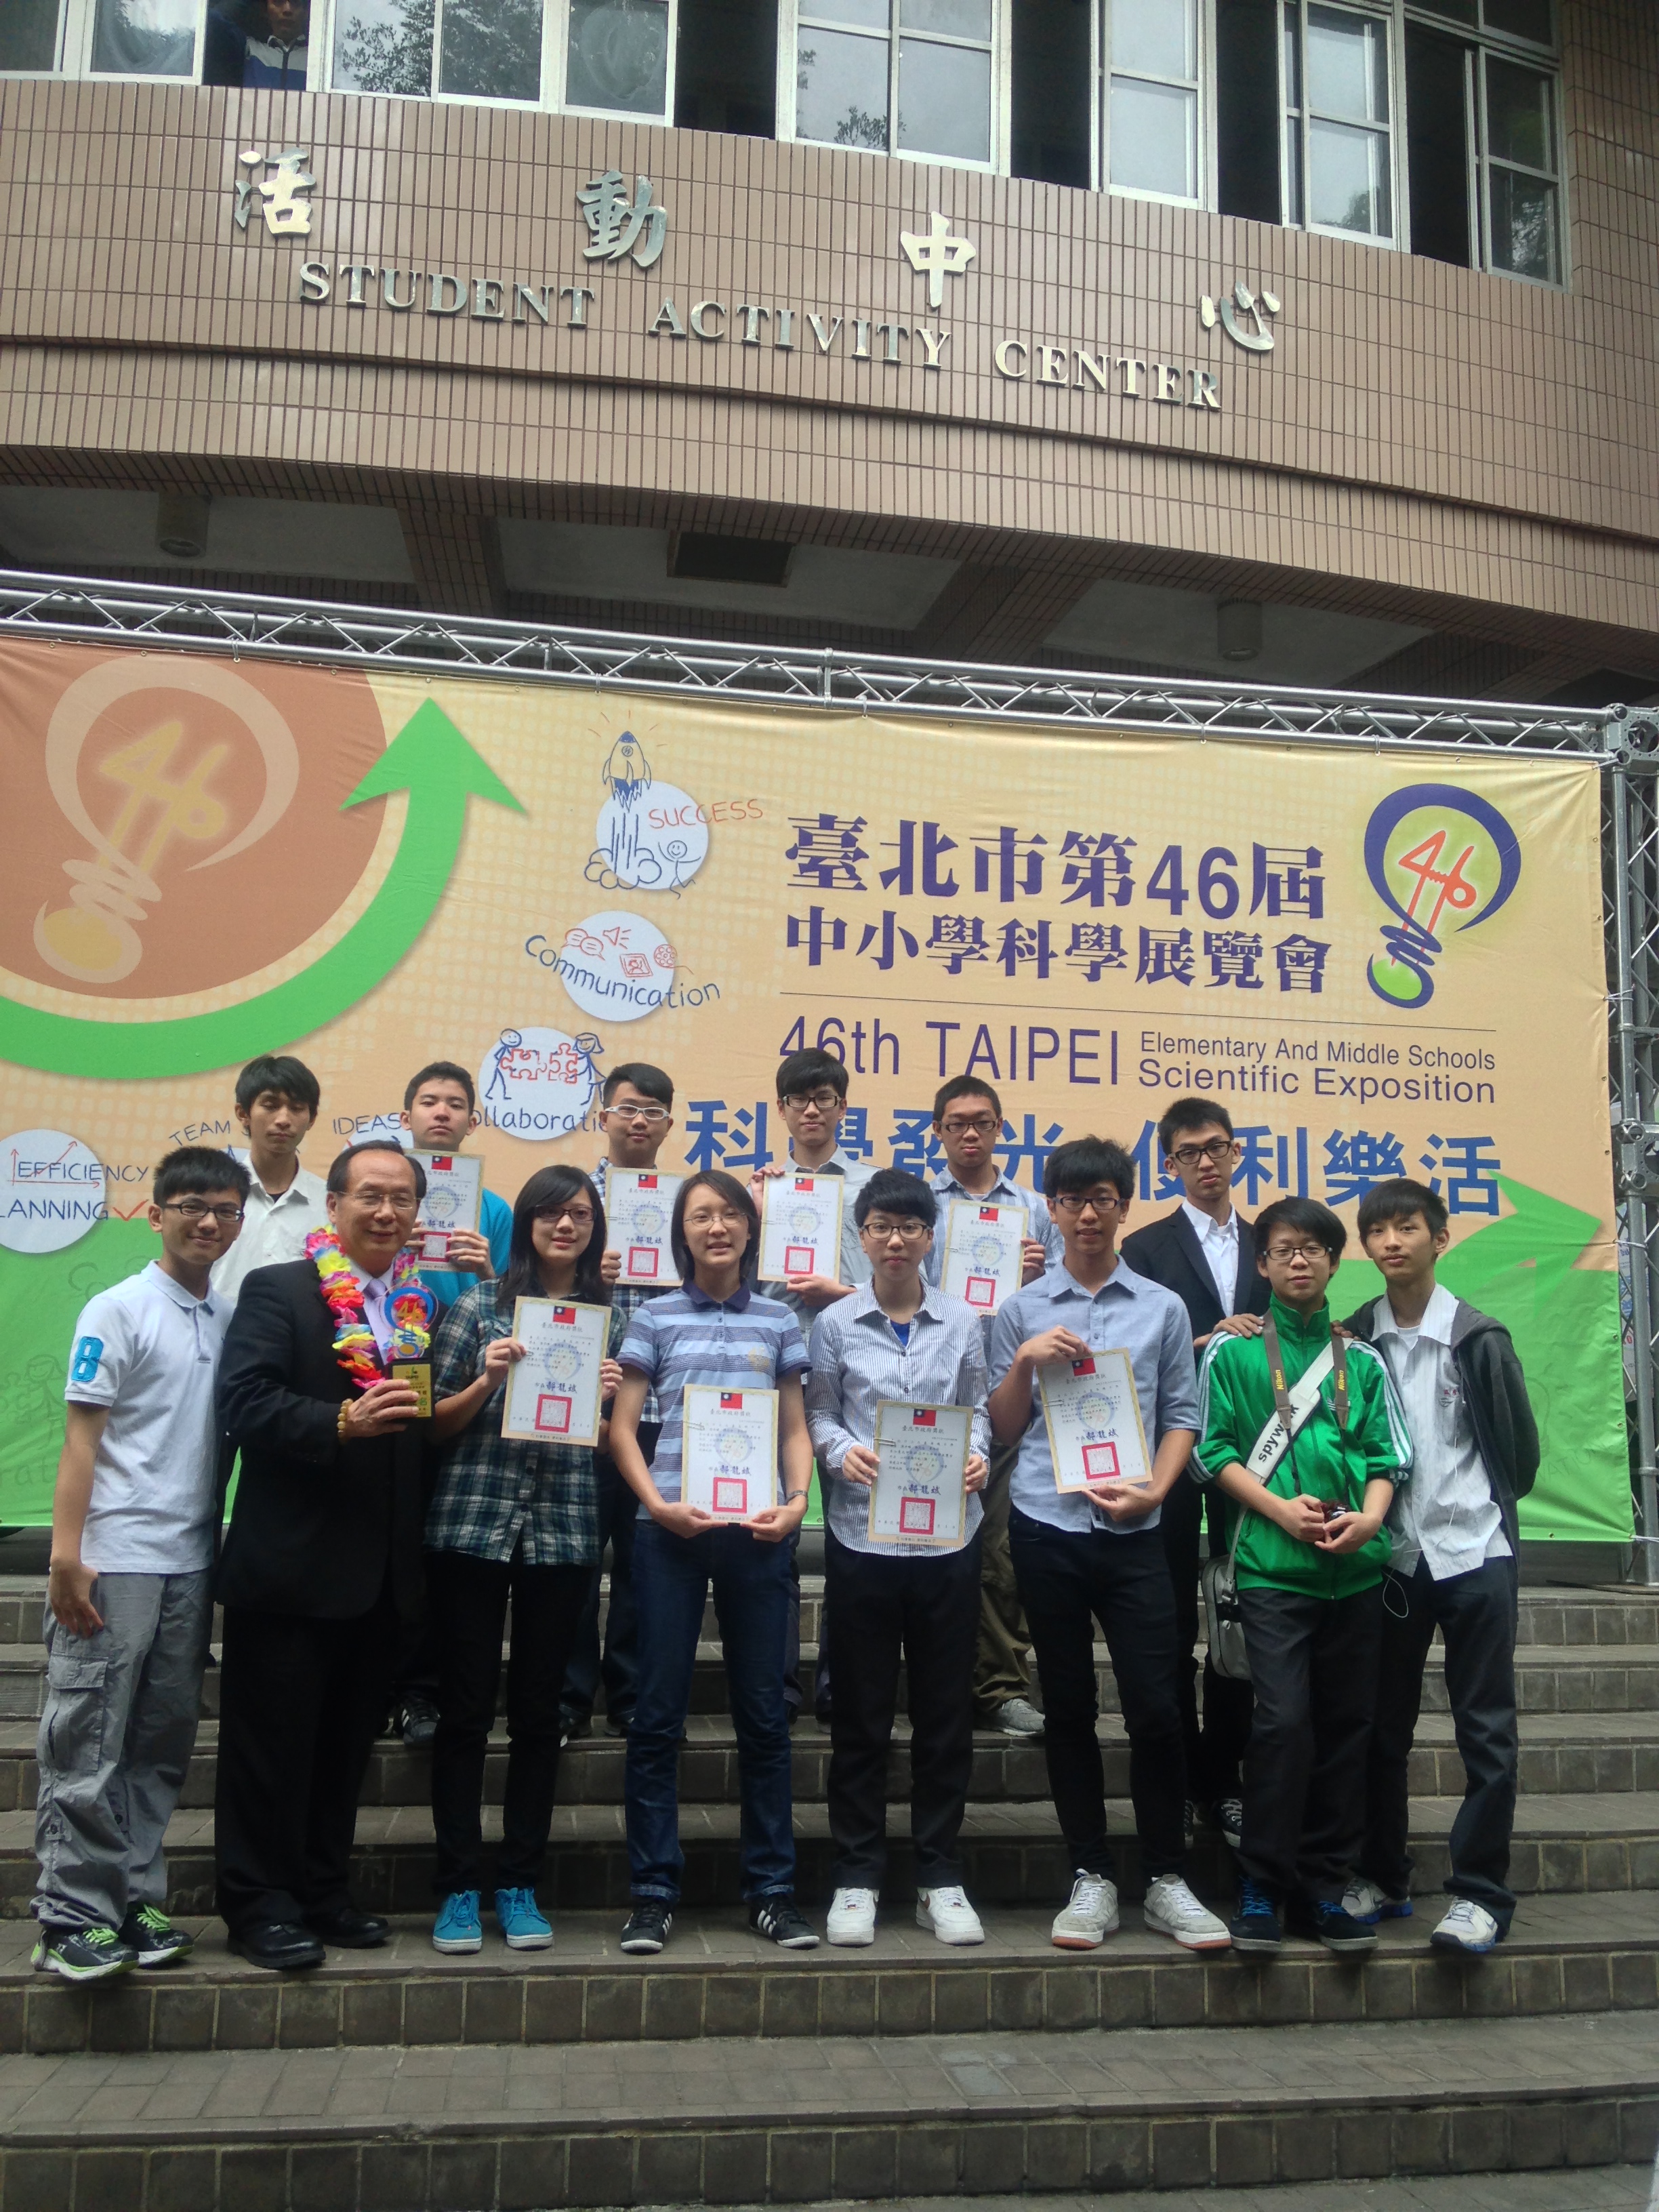 賀!!本校榮獲46屆台北市科展高中組團體第三名!!